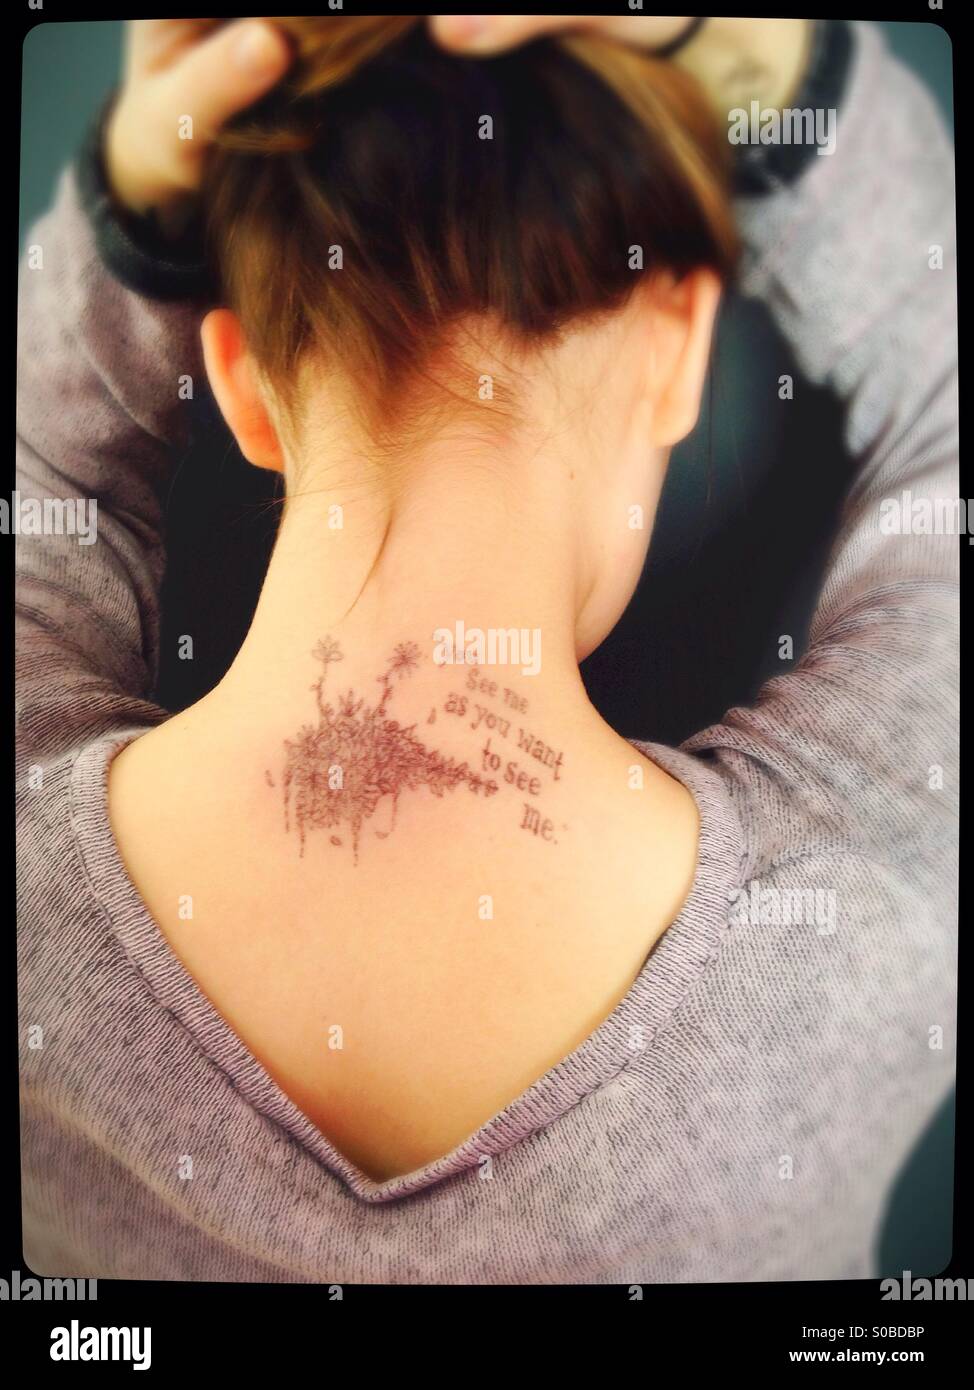 Ein Mädchen mit einer Zeichnung auf der Rückseite der Hals und die Worte "Sie sehen mich, wie Sie mich sehen wollen." Stockfoto